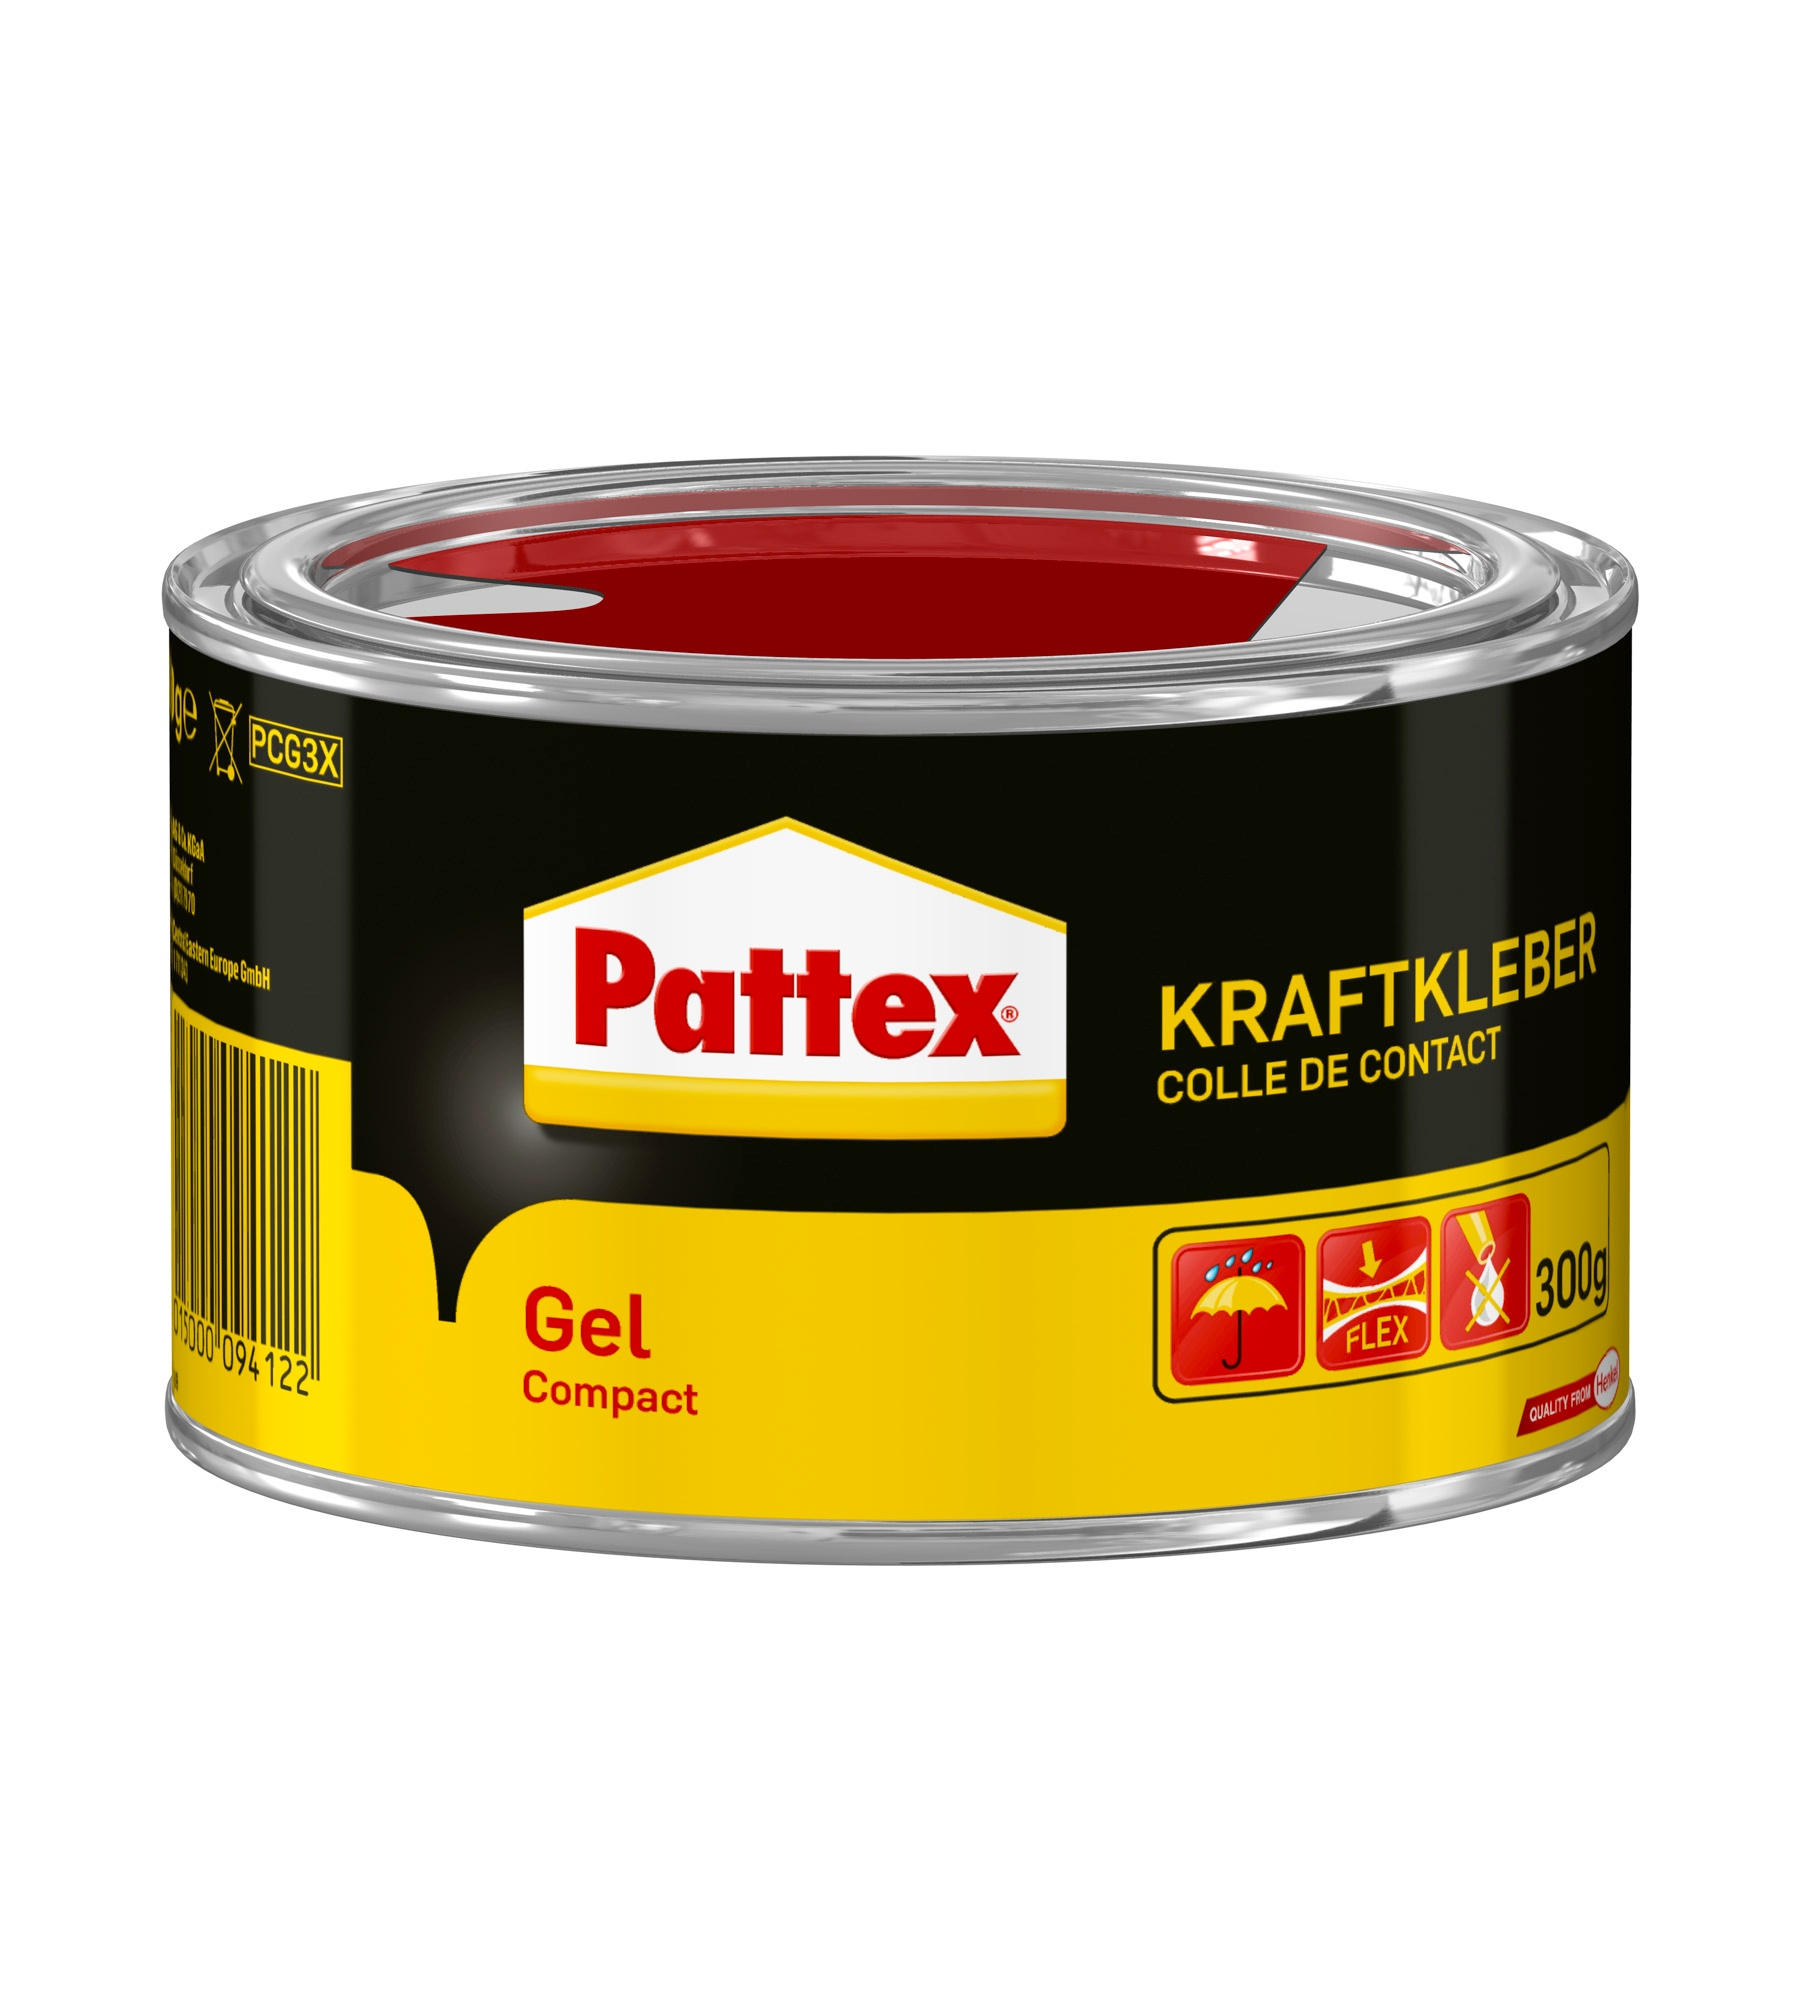 Pattex Kraftkleber Gel Compact, 300 g